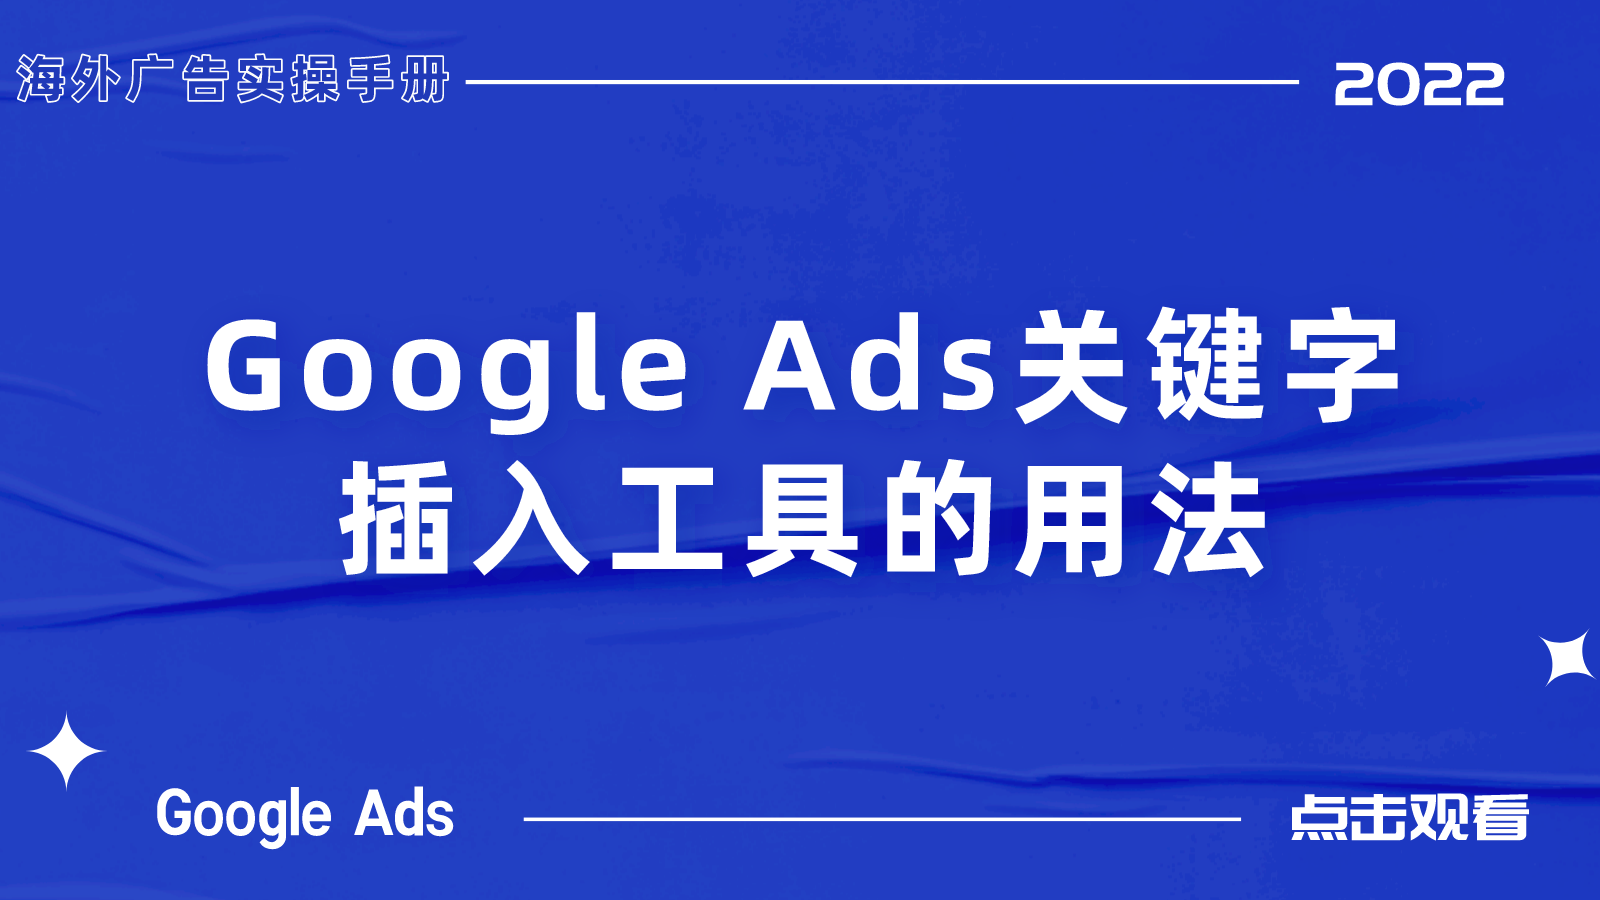 【Google Ads】关键字插入工具的用法